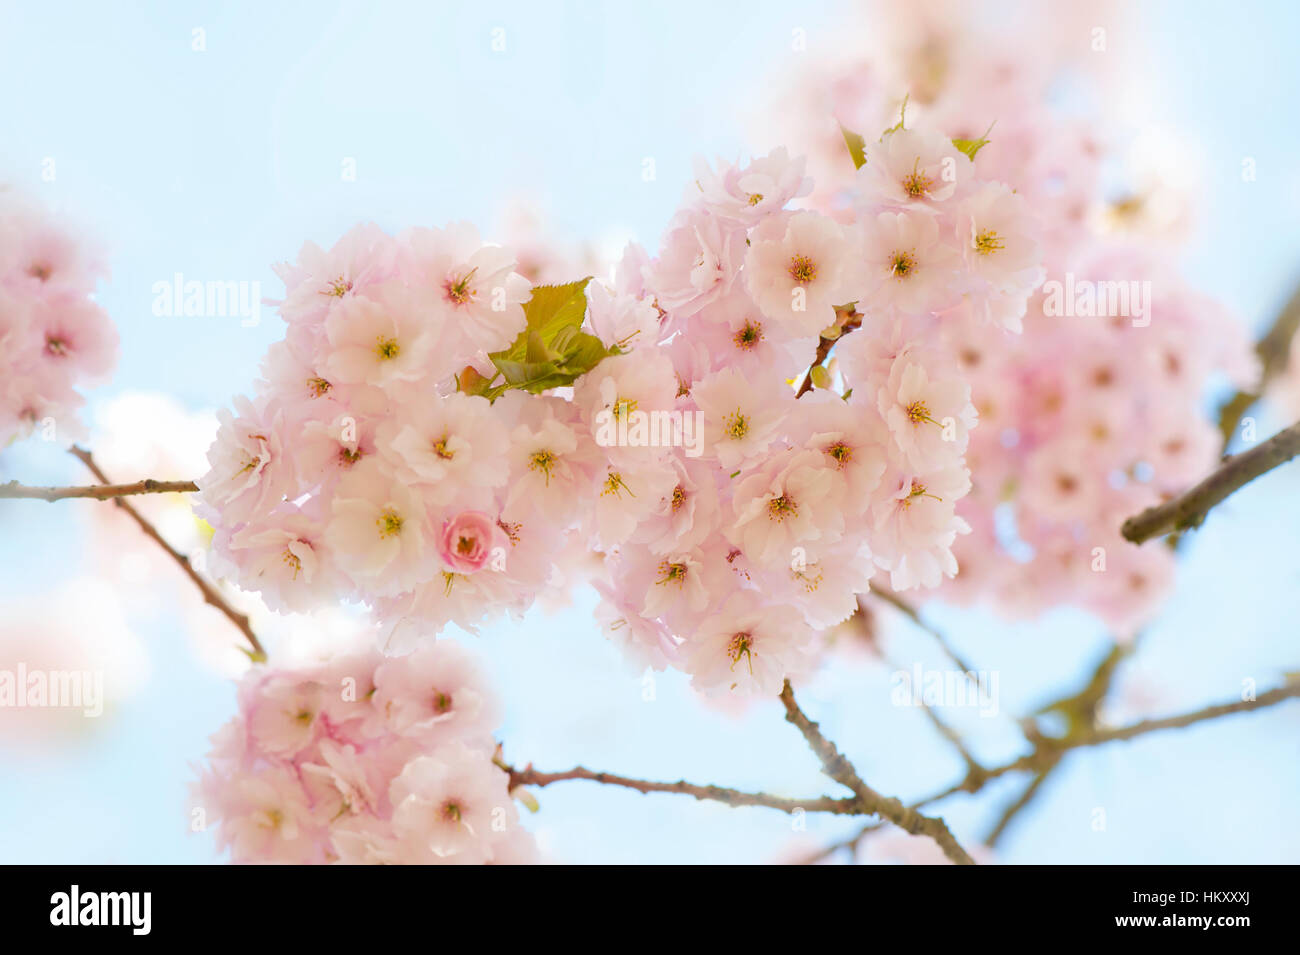 Shshui Prunus, sakura Japanese flowering cherry tree rose doux printemps fleurs, image prise contre un ciel bleu. Banque D'Images